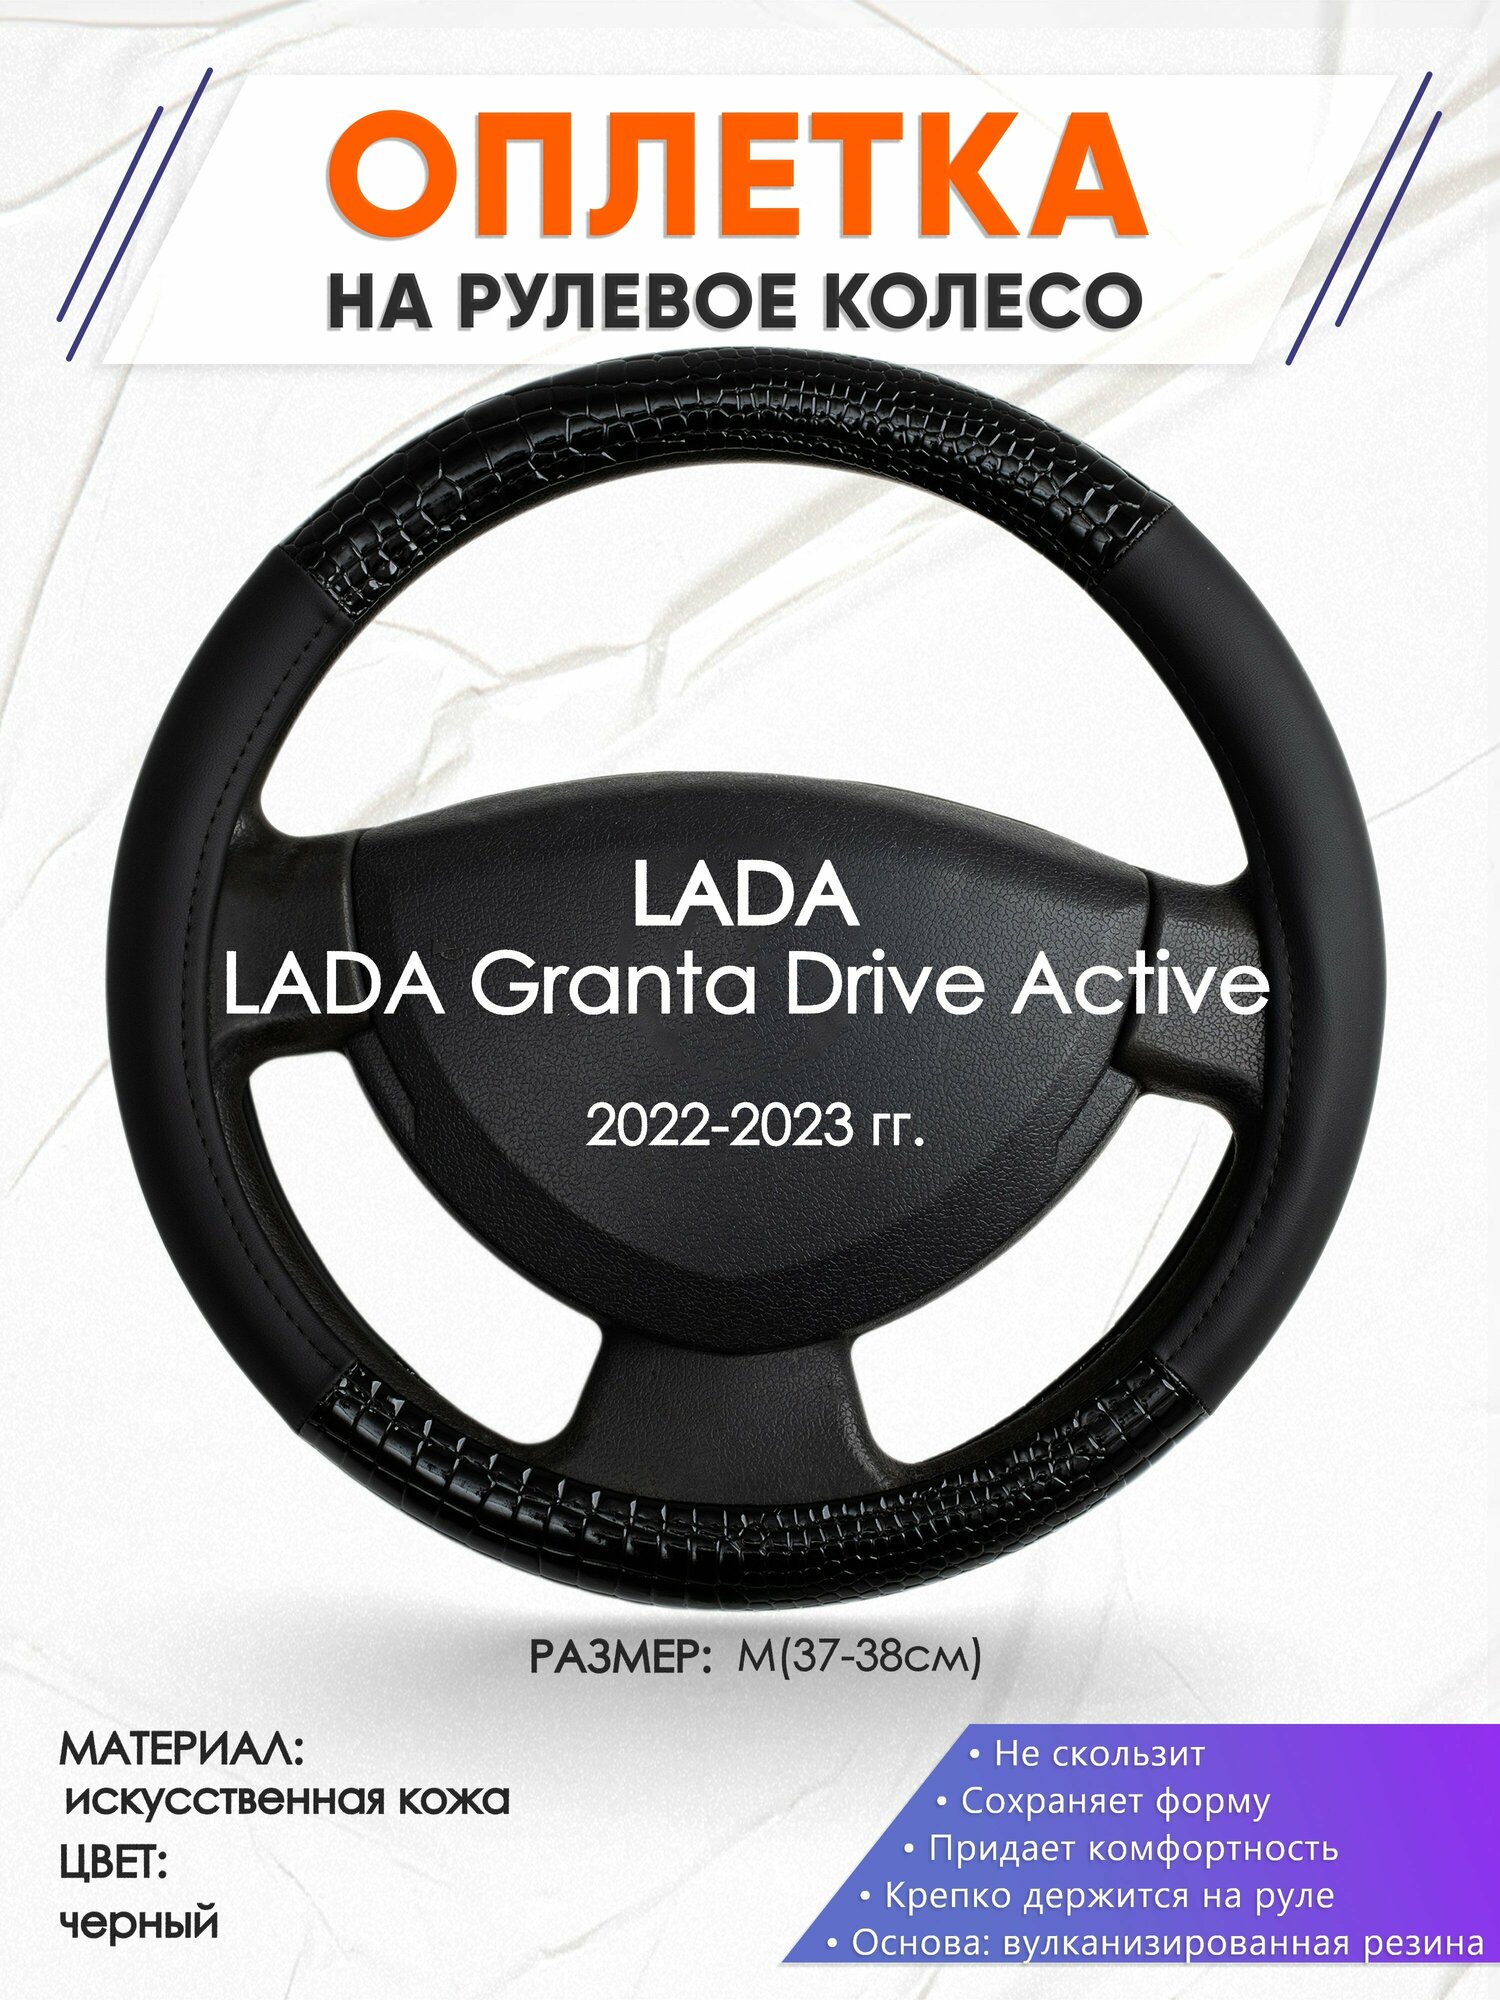 Оплетка наруль для LADA Granta Drive Active(Лада Гранта Драйв Актив) 2022-2023 годов выпуска, размер M(37-38см), Искусственная кожа 83